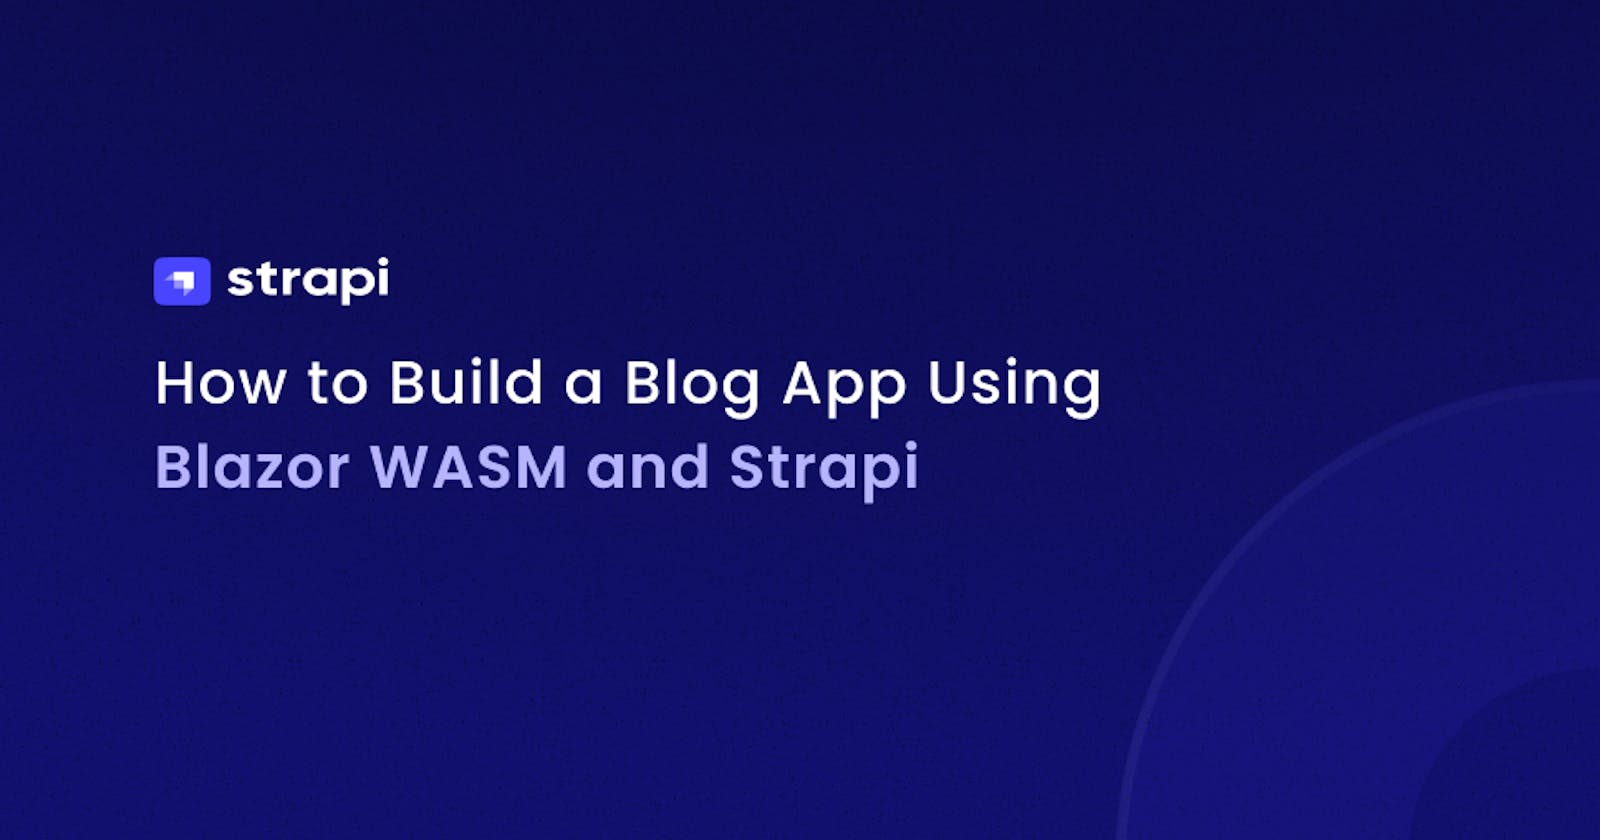 Build a Blog App Using Blazor WASM and Strapi